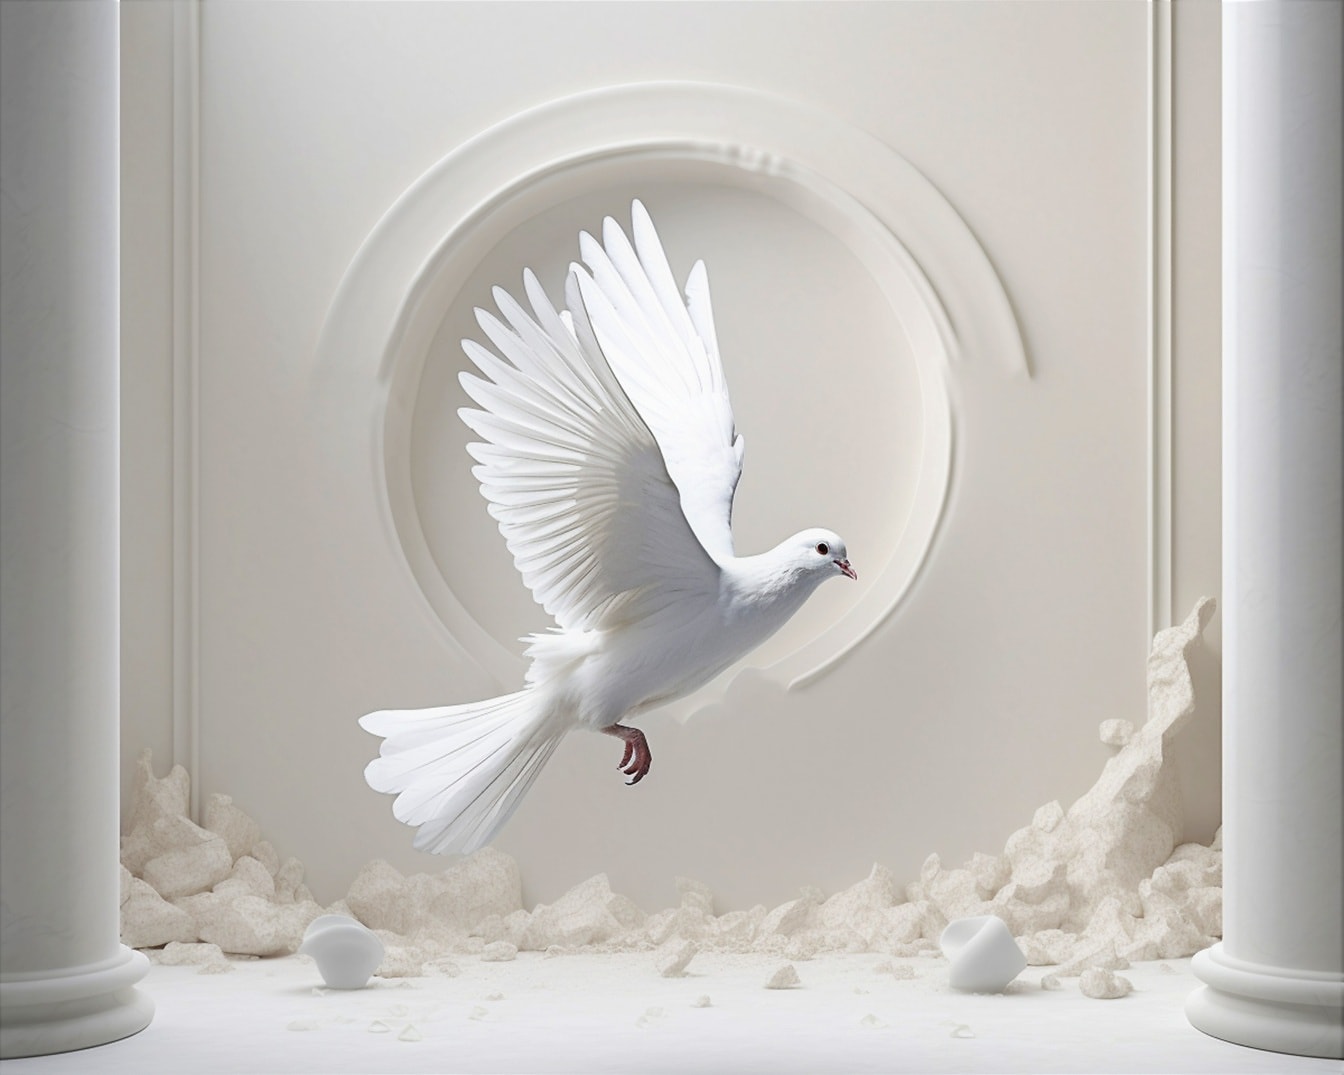 Weiße Taube fliegt in verlassenem Raum